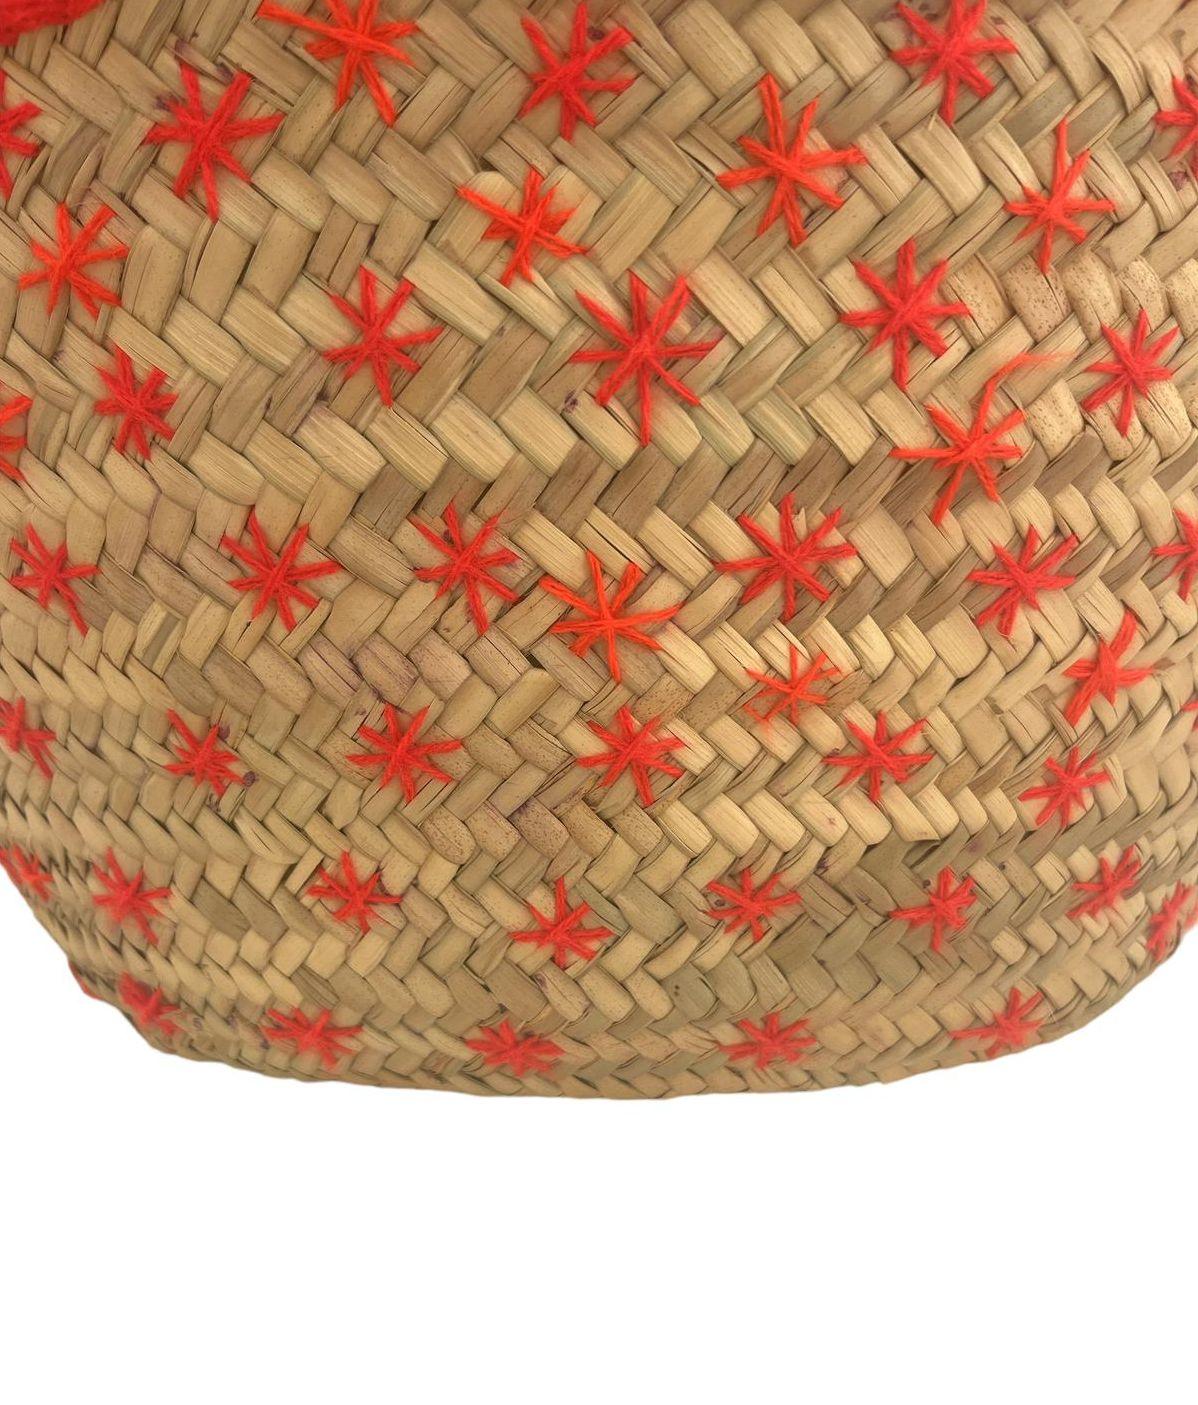 Borsa in foglie di palma con ricami arancioni in lana, fatta a mano - MARIKA DE PAOLA - HOME DECOR